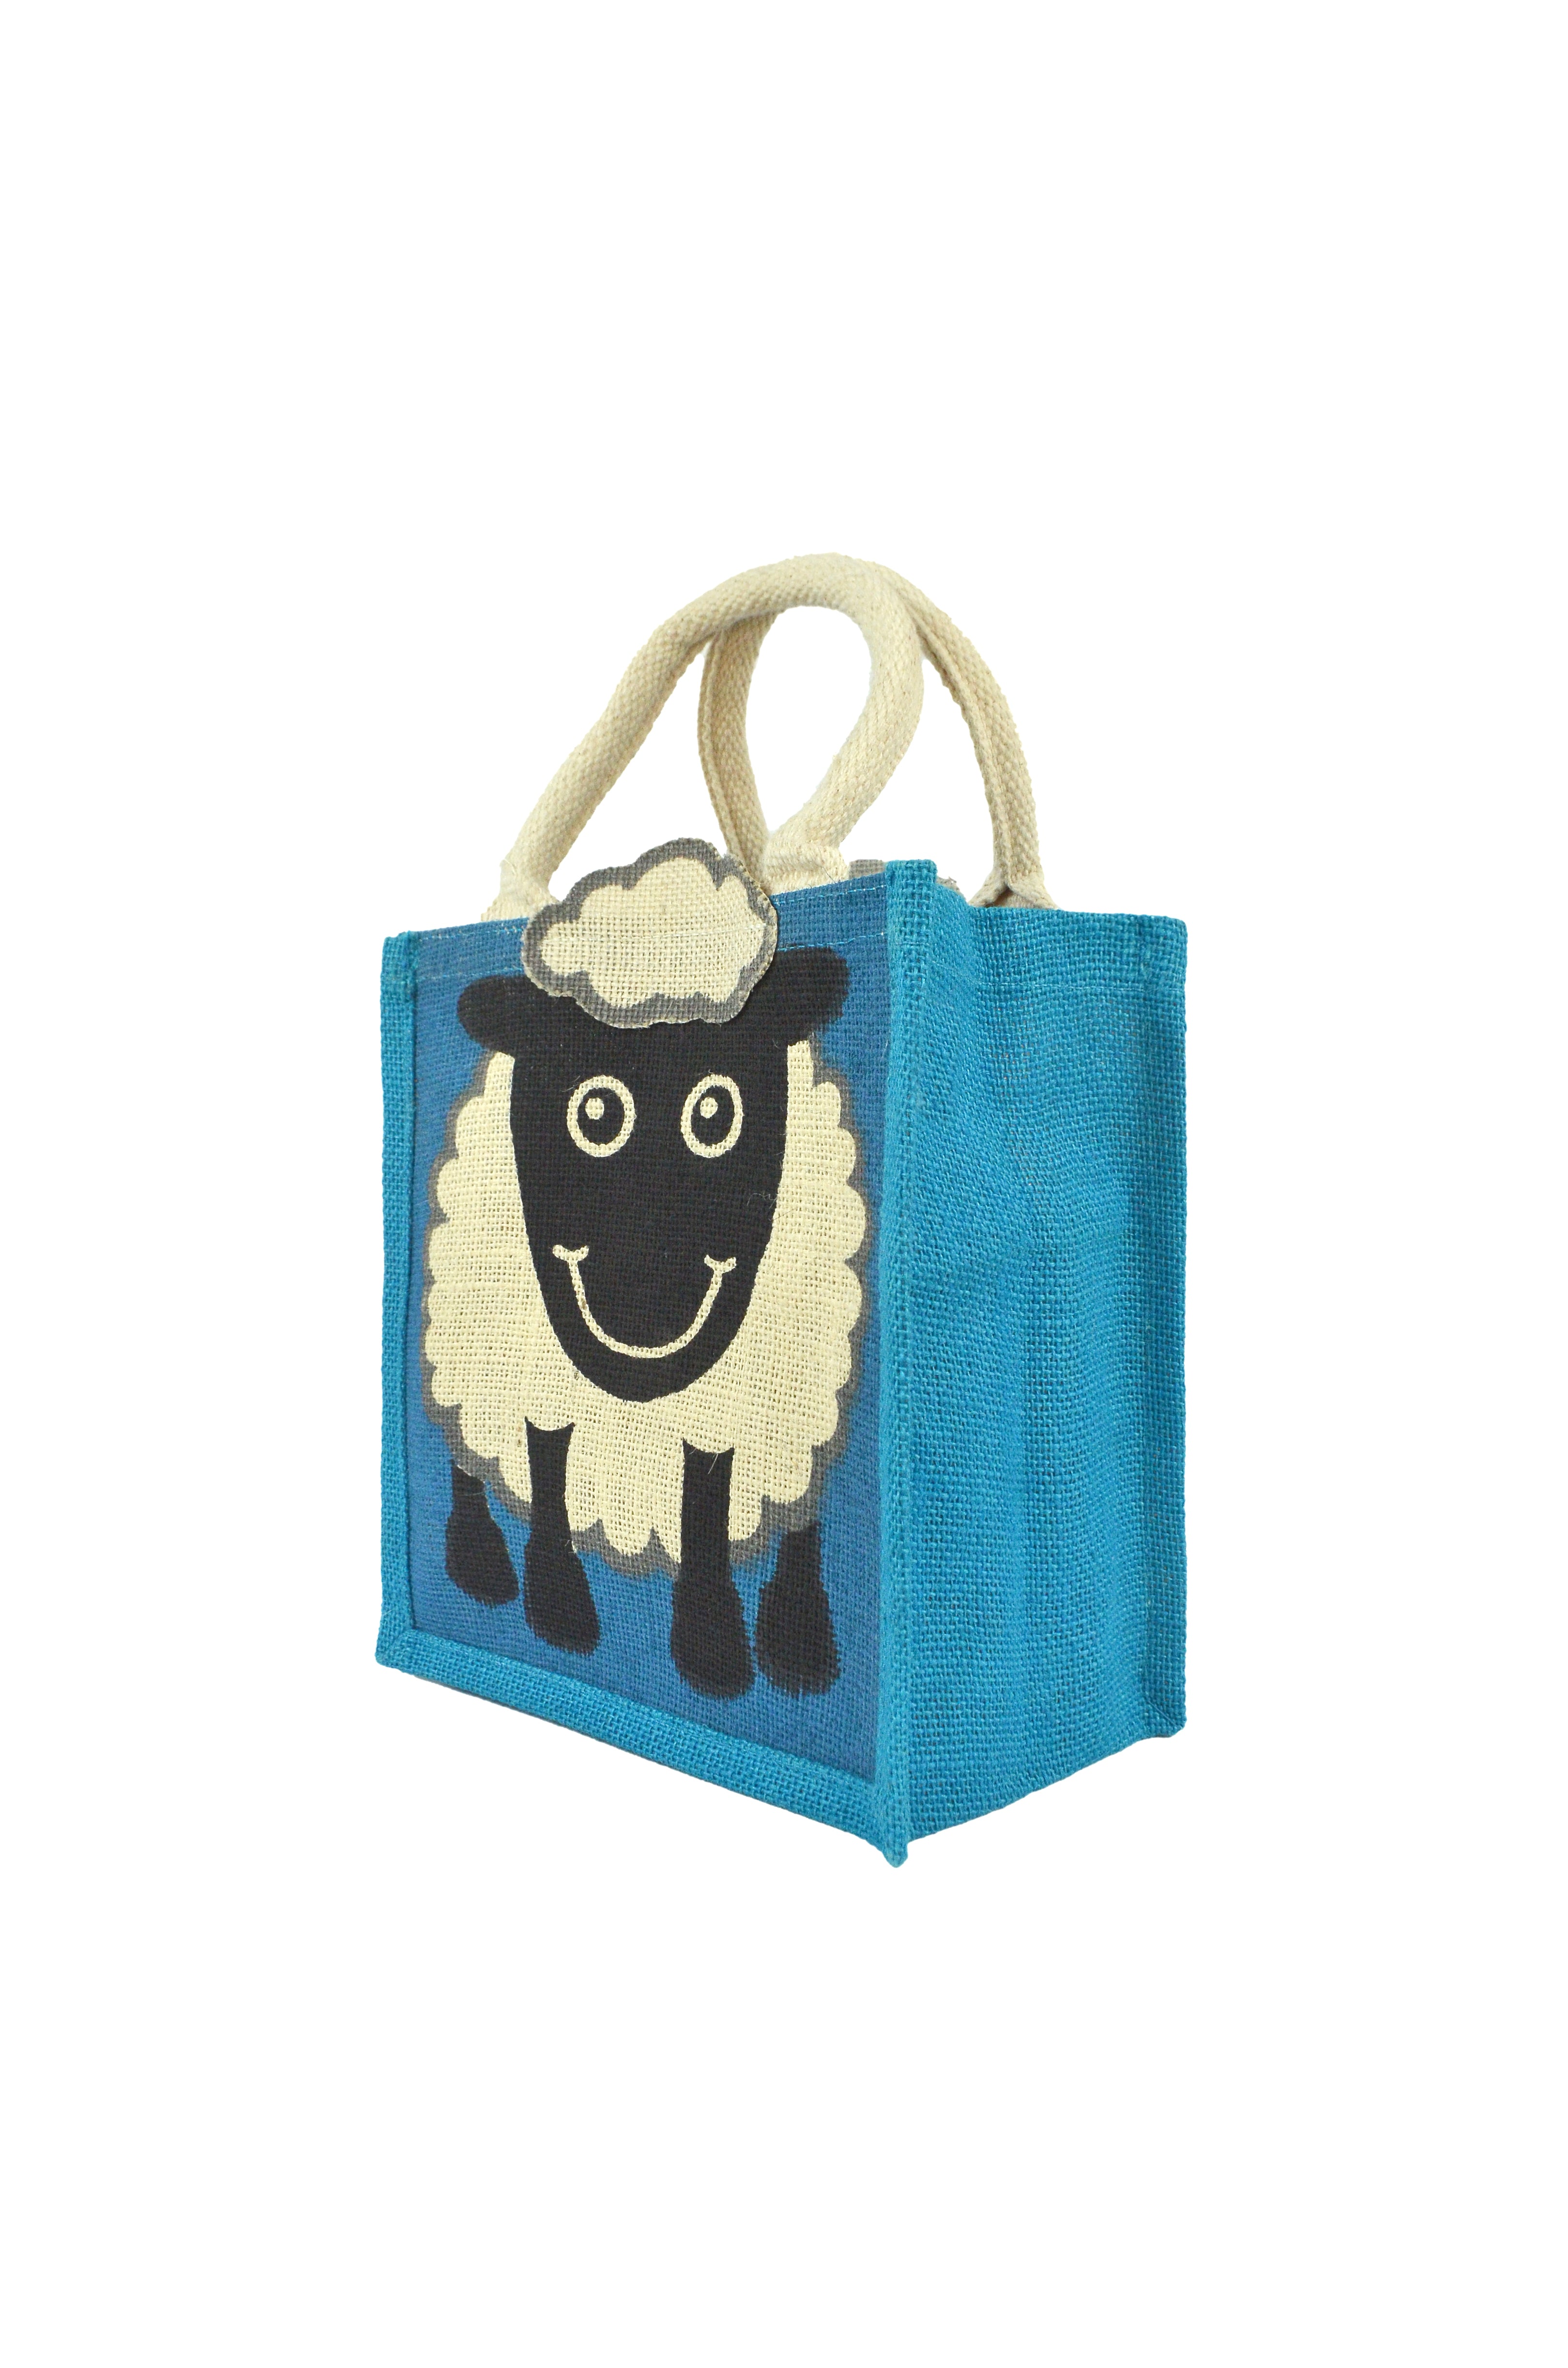 Ulster Weavers Woolly Sheep PVC Bag - Medium in Green